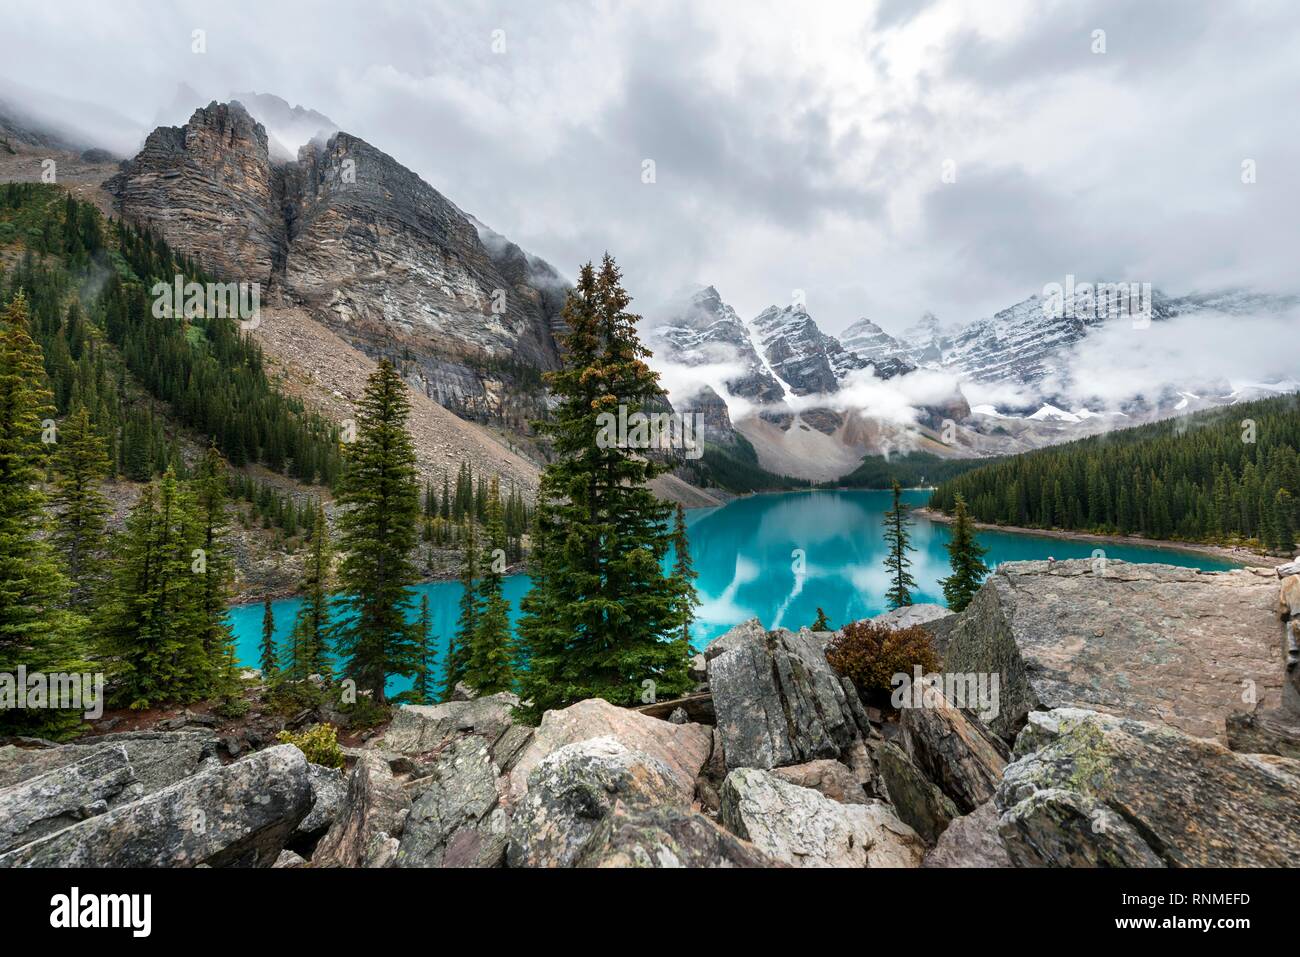 Wolken zwischen den Berggipfeln, Reflexion in türkisfarbenen Gletscherseen, Moraine Lake, Tal der zehn Gipfel, Rocky Mountains, Banff Nationa Stockfoto